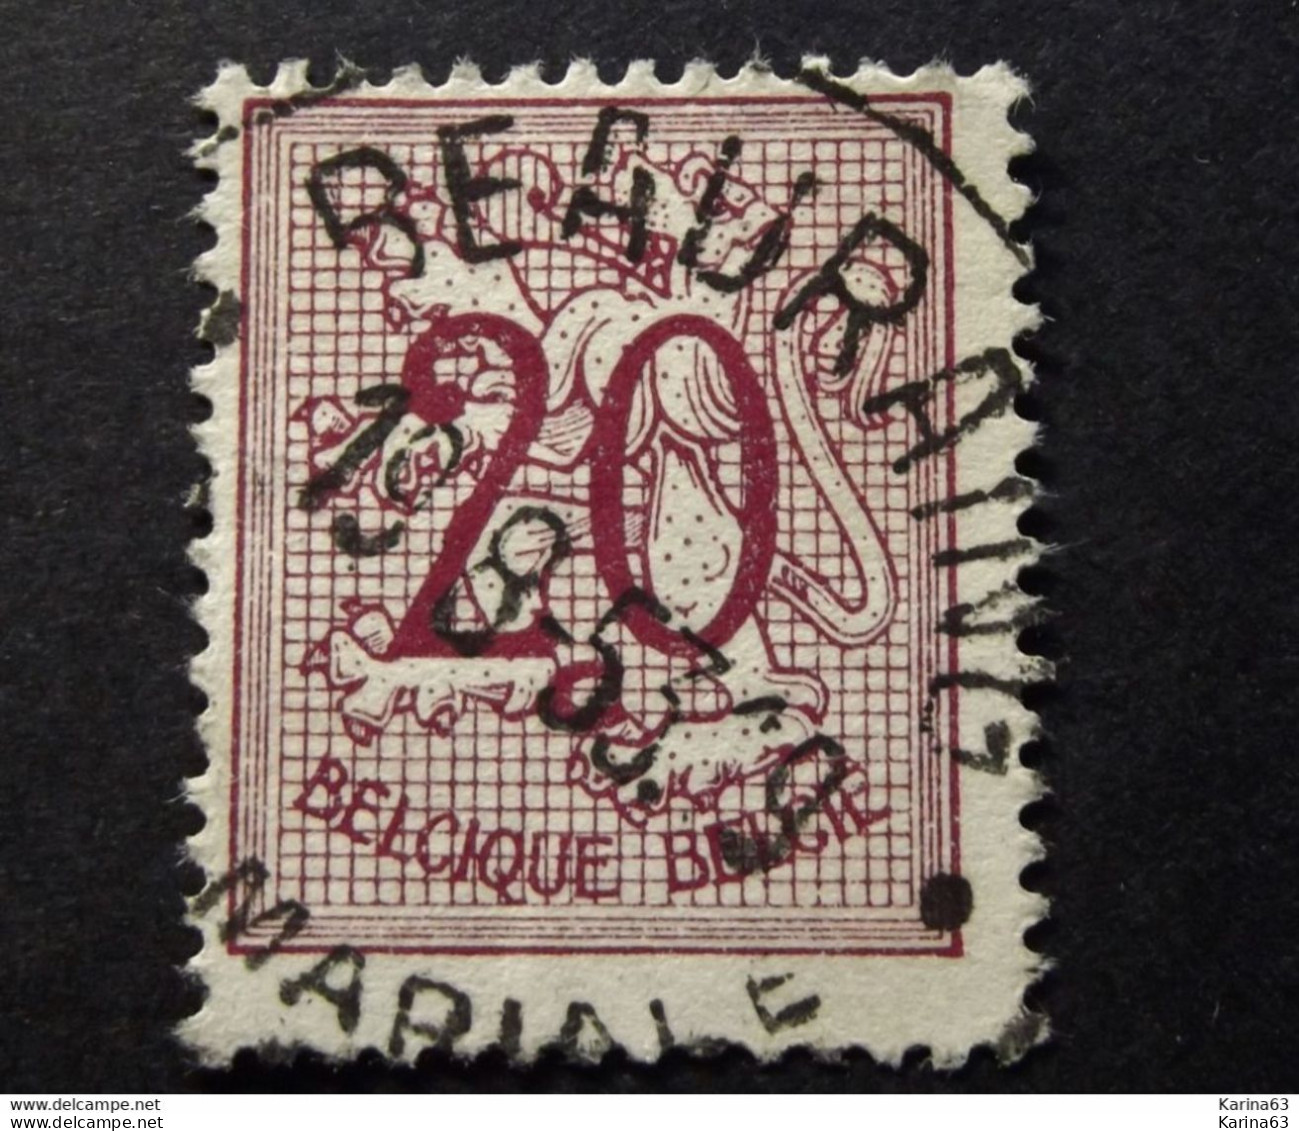 Belgie Belgique - 1951 - OPB/COB N° 851 - (  1 Value ) -  Cijfer Op Heraldieke Leeuw  Obl. Beauraing  1953 - Gebraucht